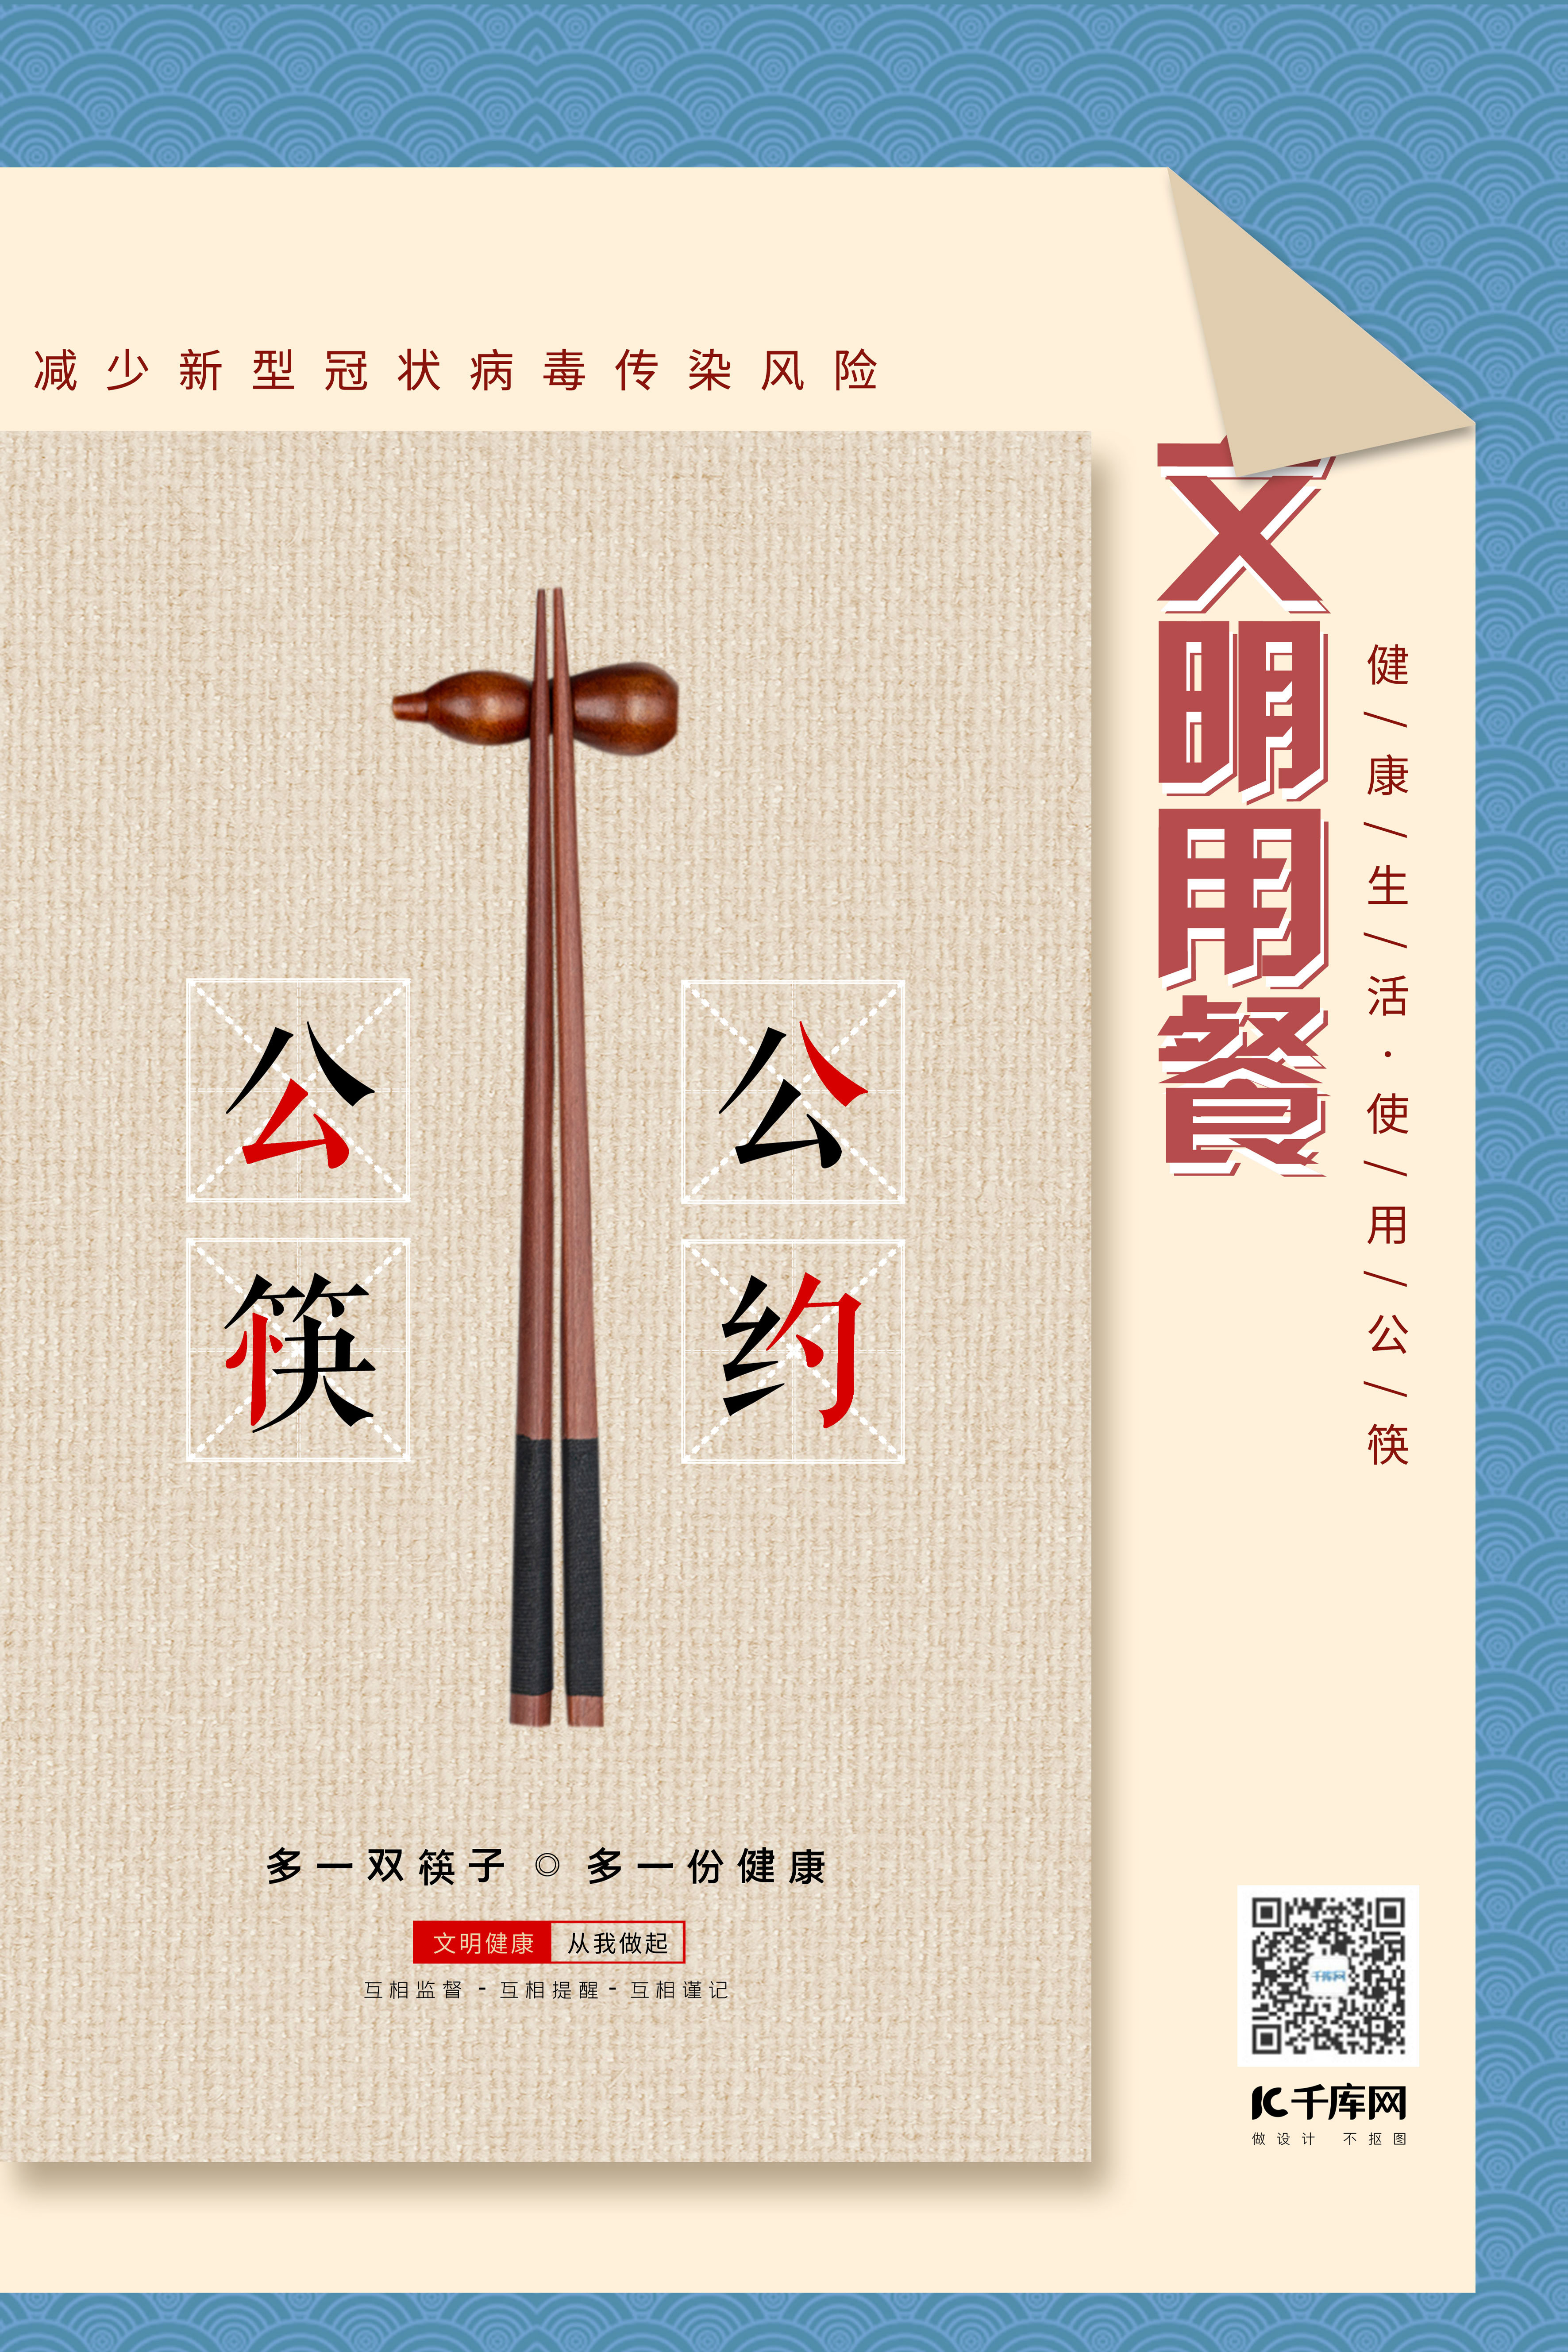 公筷公约文明用餐拼色复古布纹海报图片